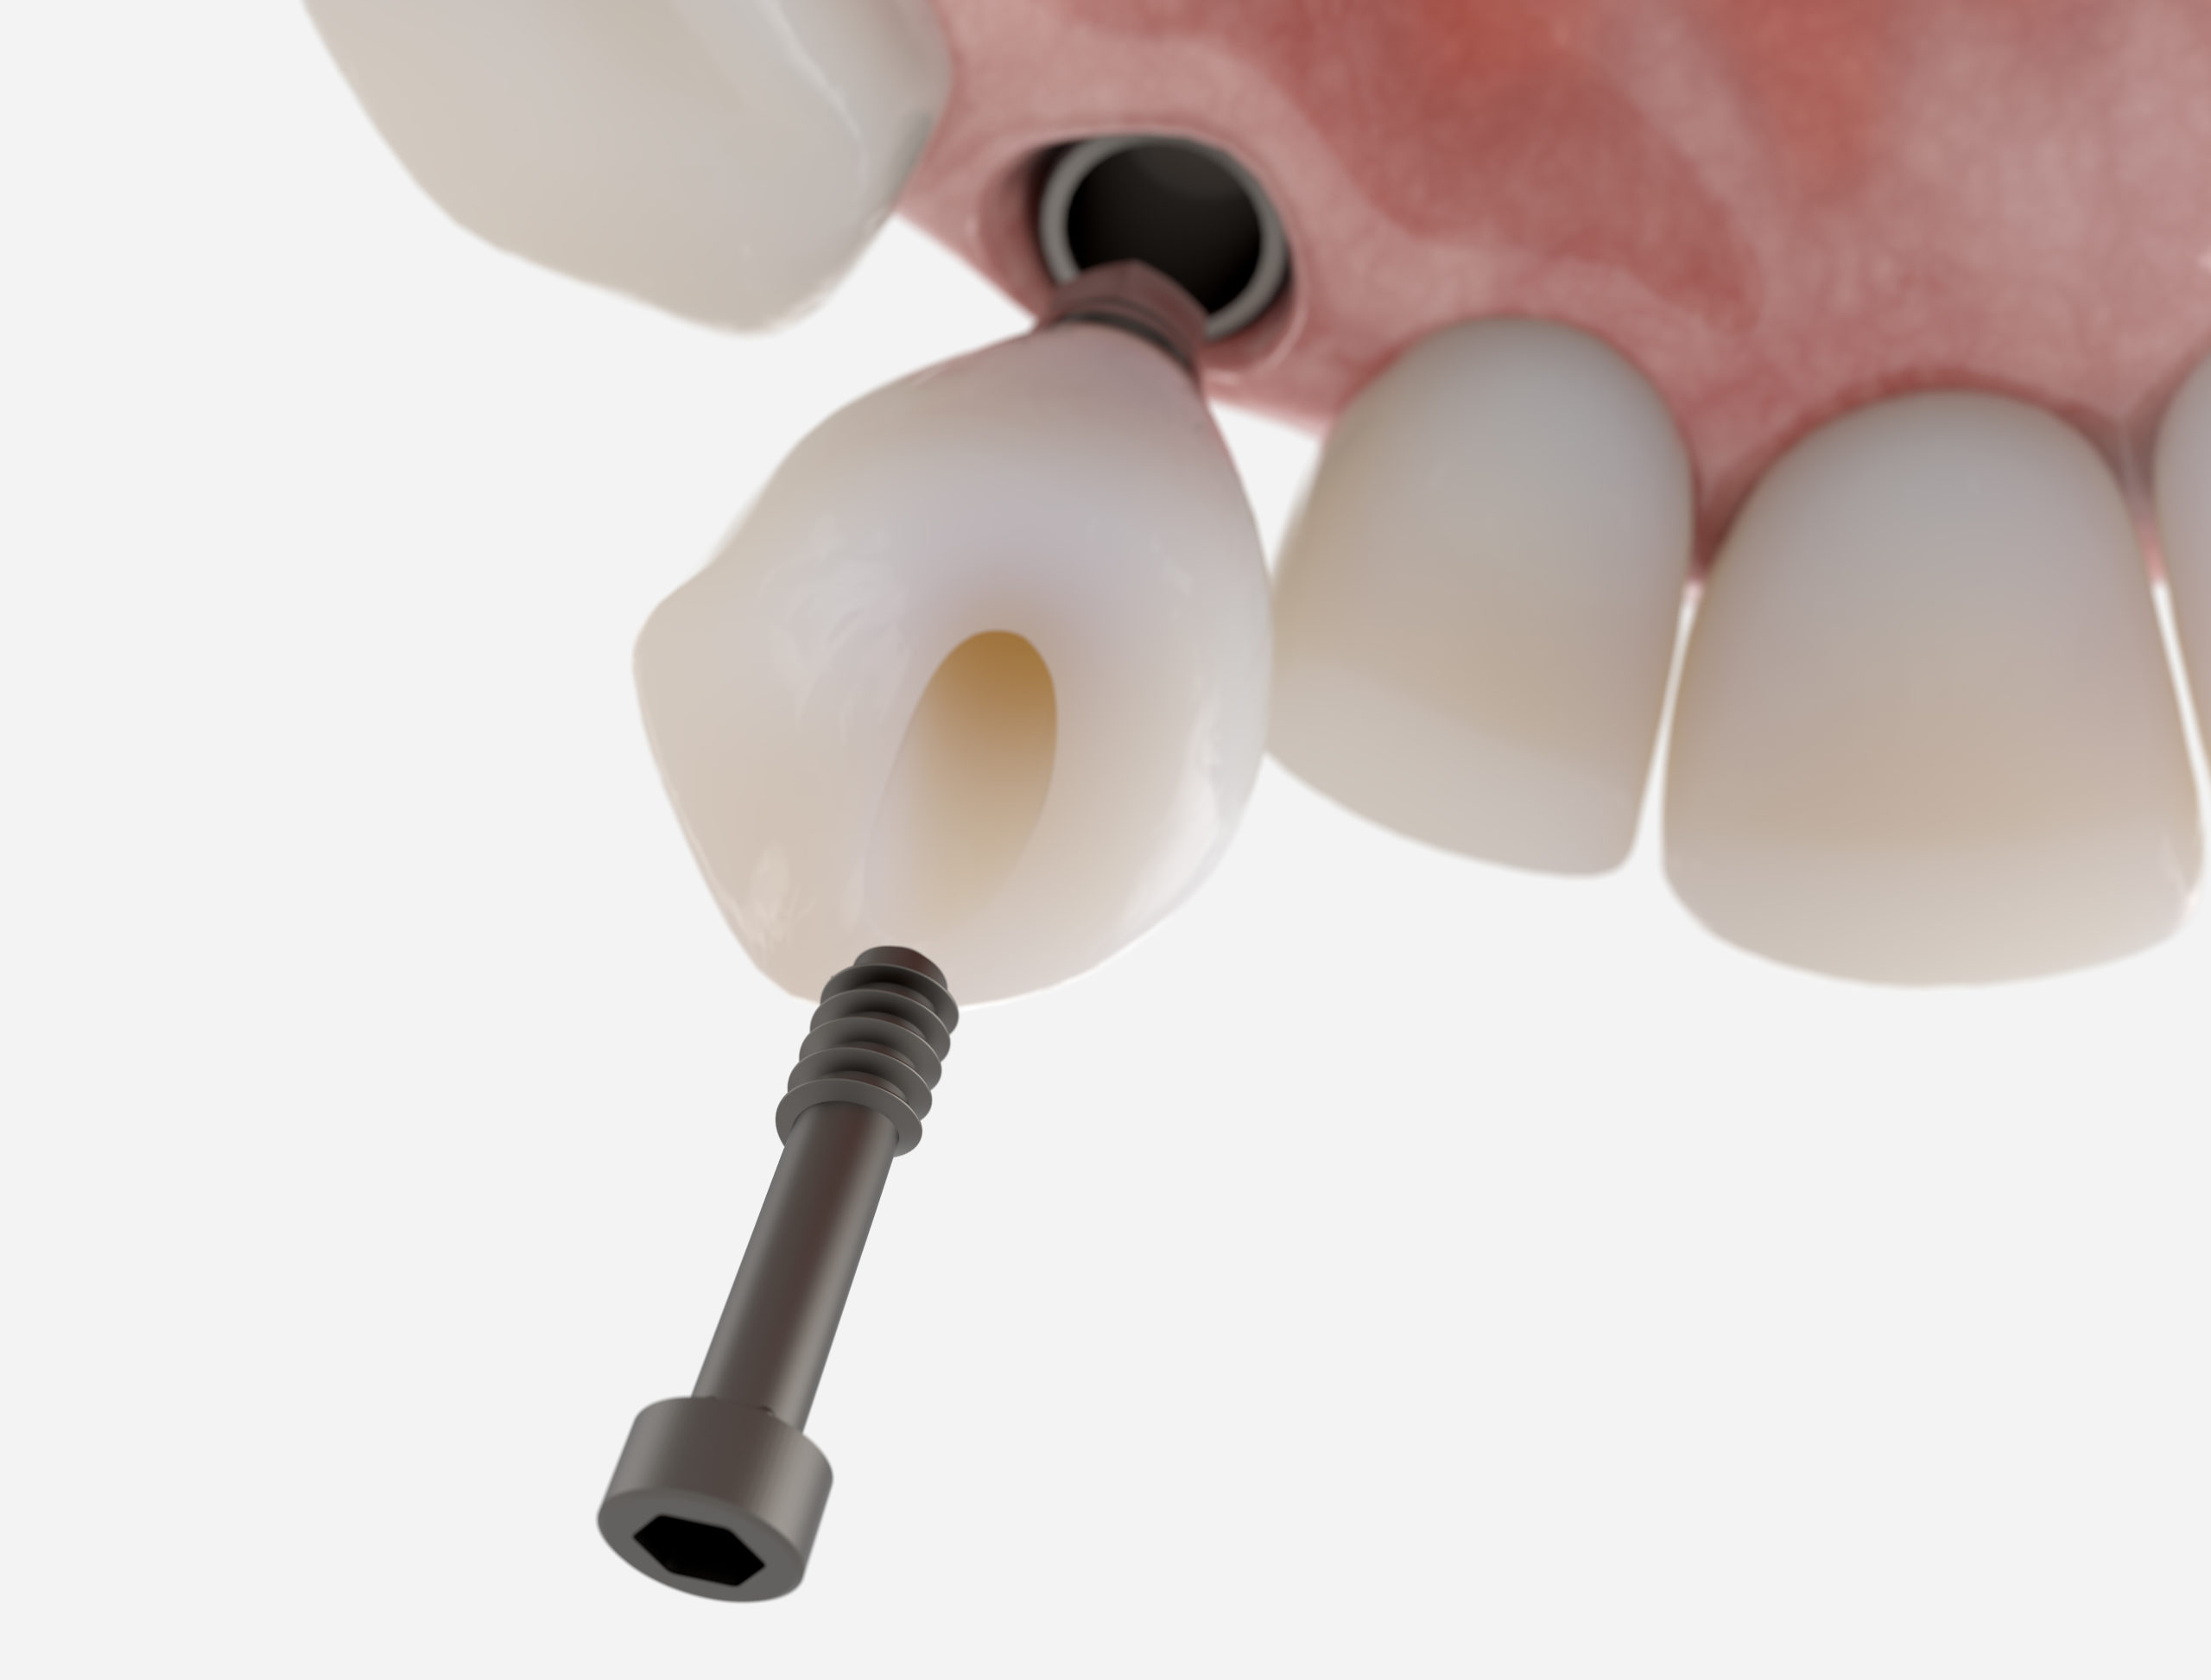 Une prothèse en céramique vissée sur un implant dentaire pour remplacer une canine, dent du sourire